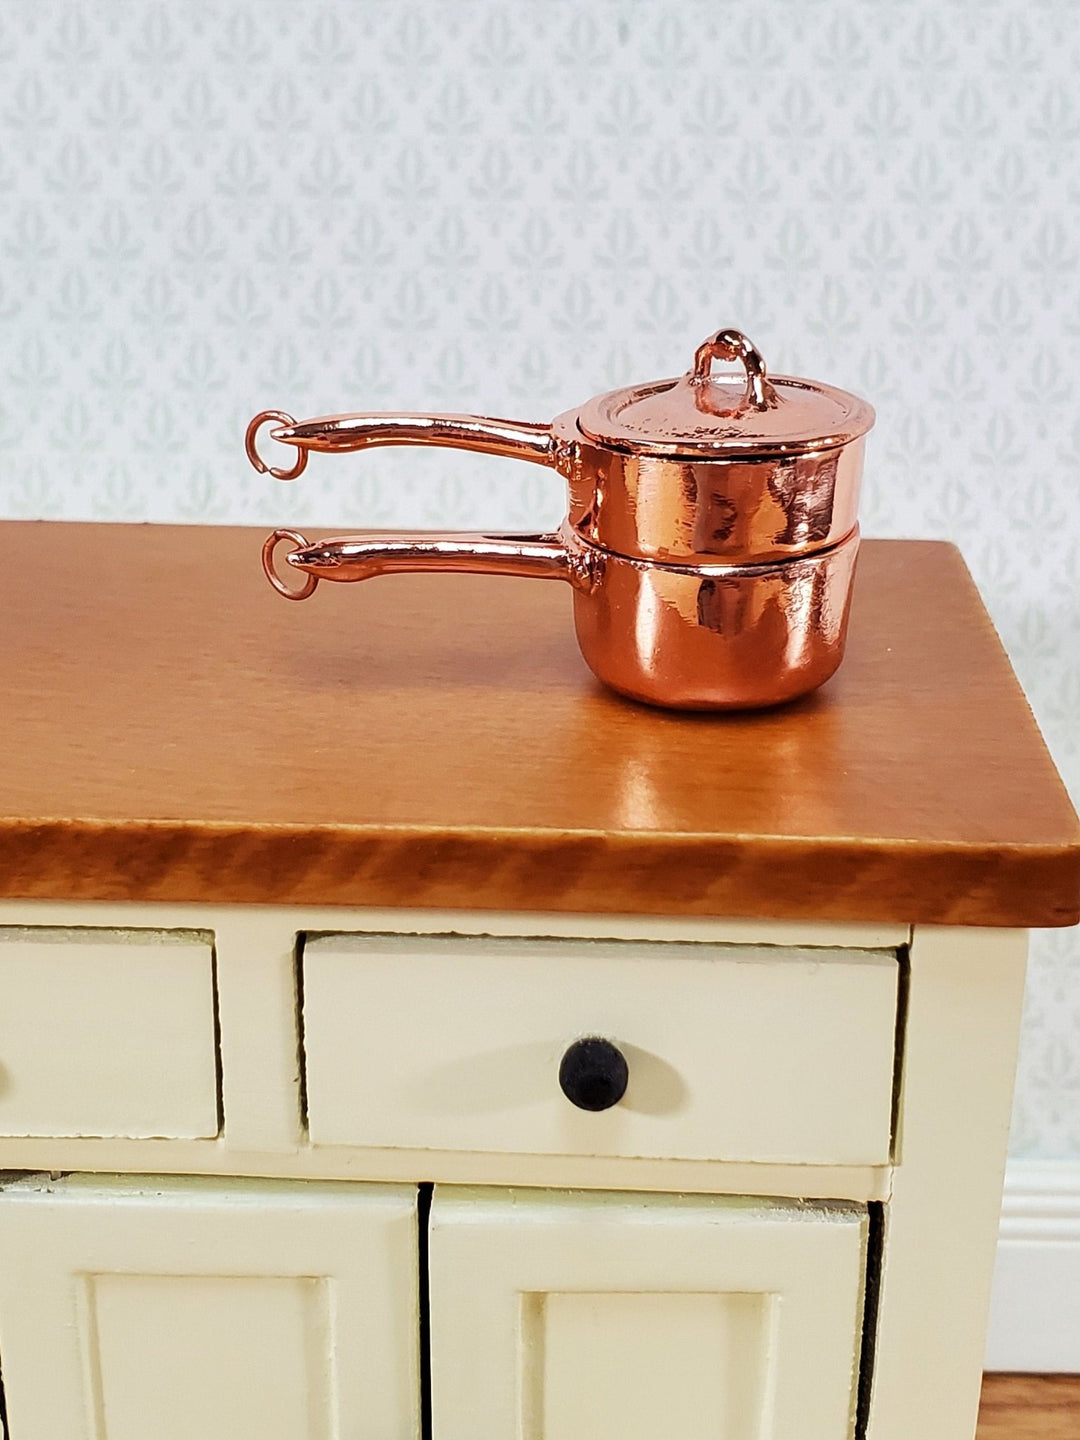 Dollhouse Copper Double Boiler Pots + Lid Cooking Pans 1:12 Scale Miniature Kitchen Falcon Miniatures - Miniature Crush